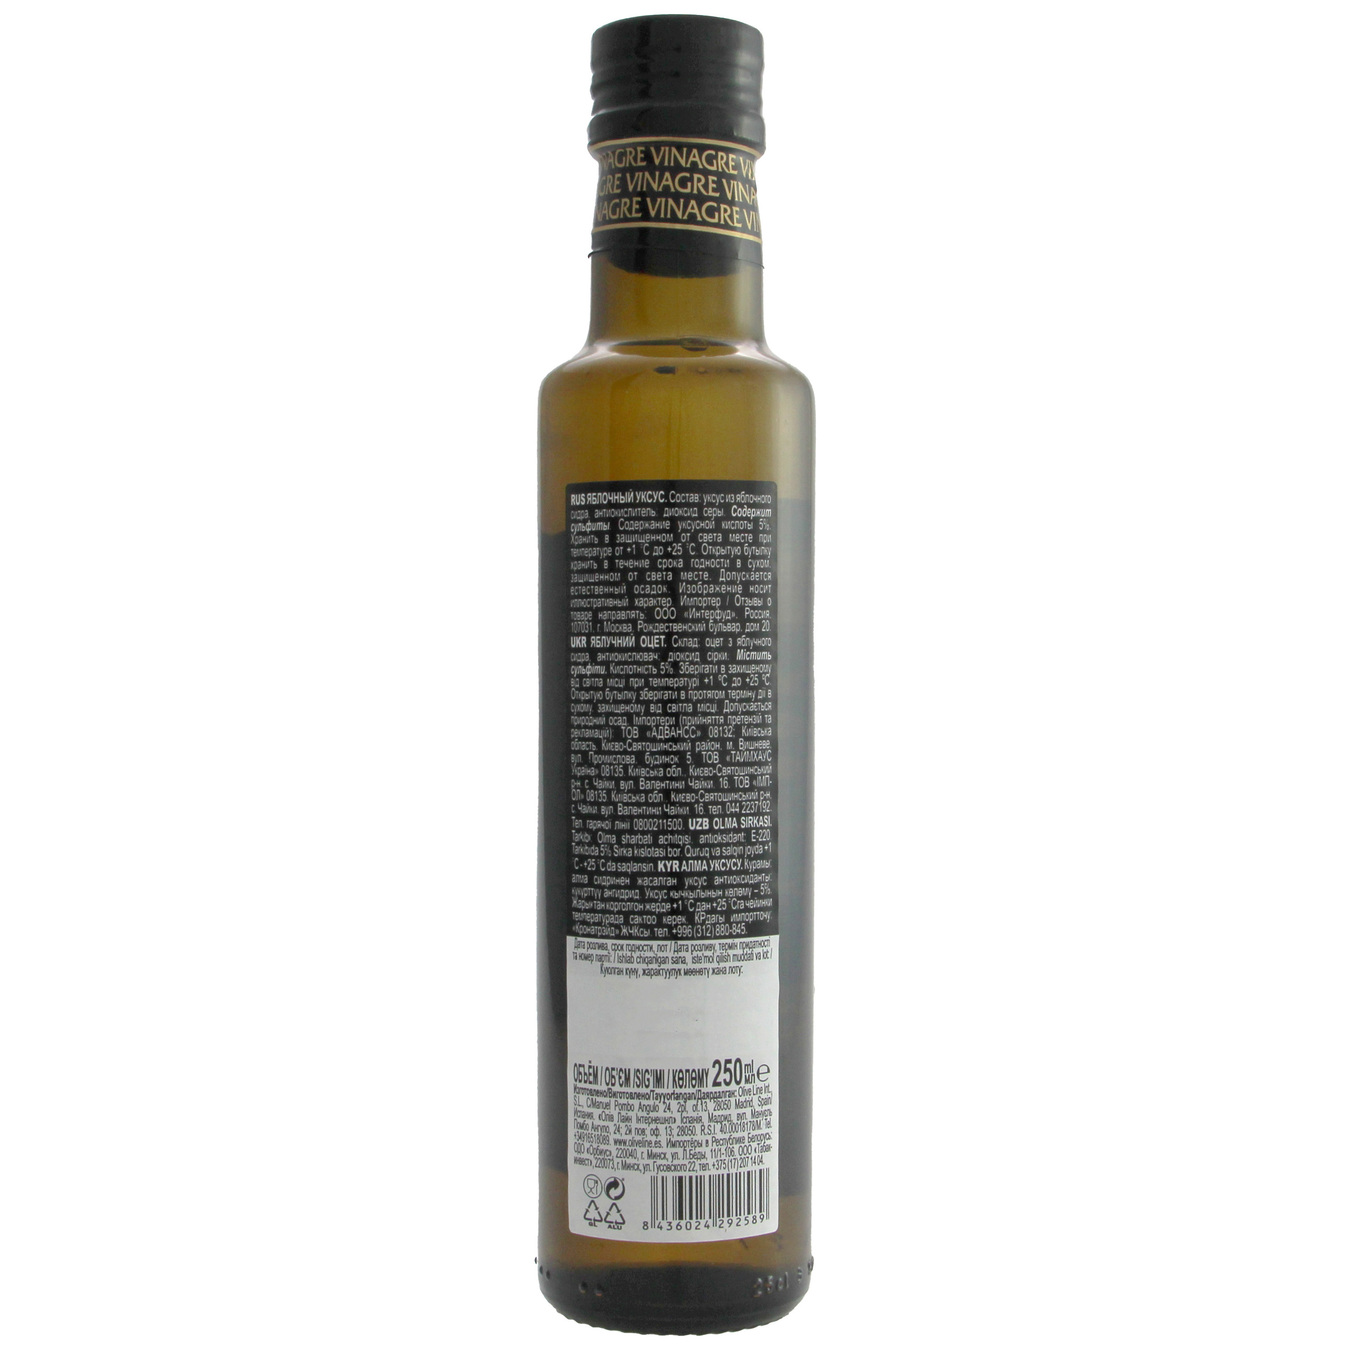 Iberica apple Vinegar 250ml 2